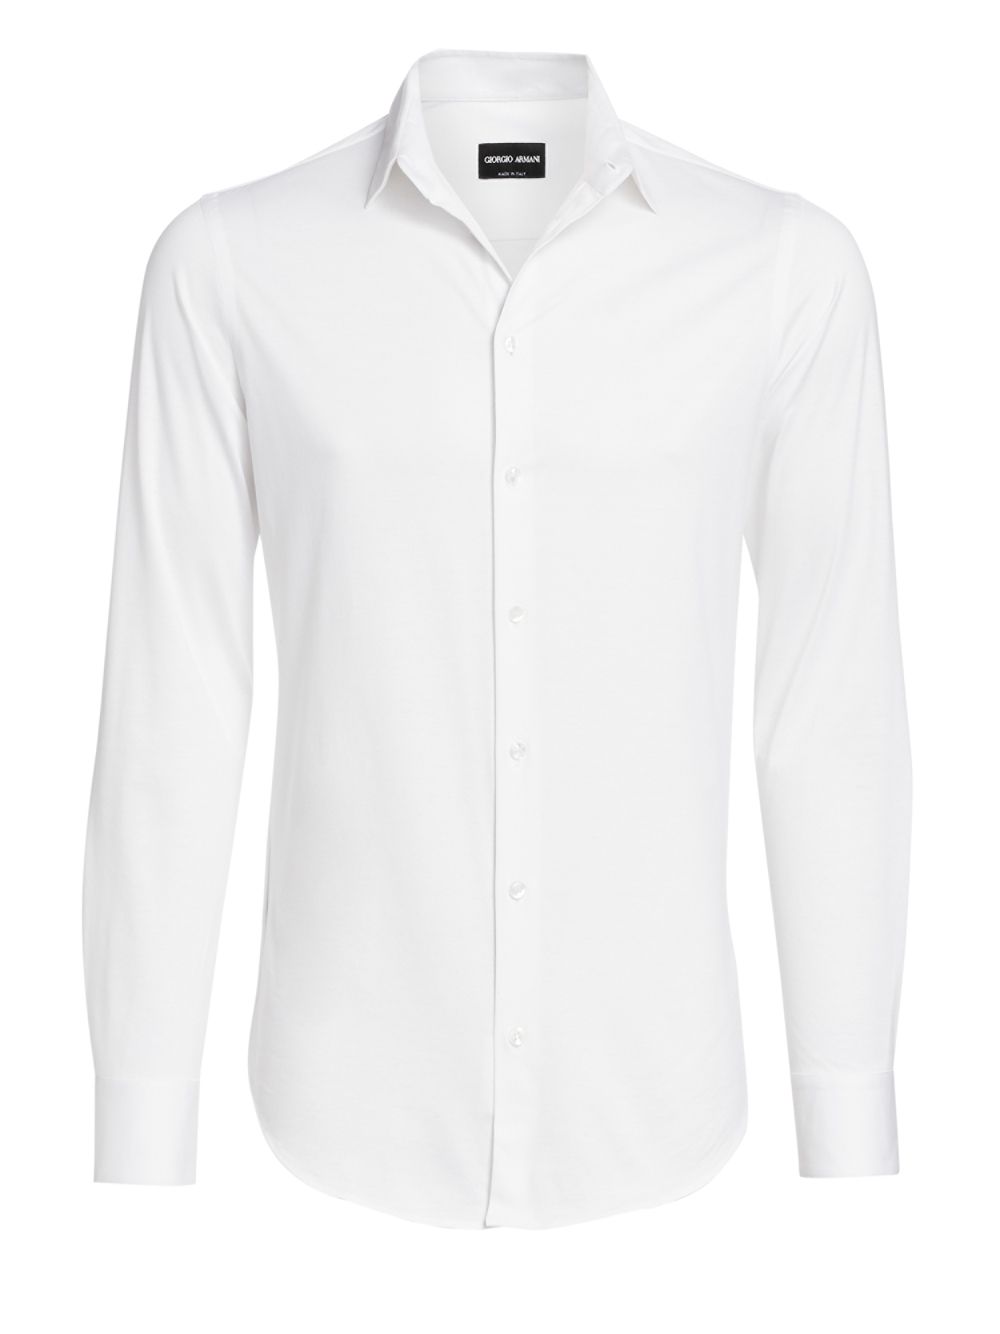 Спортивная рубашка из джерси Giorgio Armani, белый шелковистая джинсовая спортивная рубашка giorgio armani черный